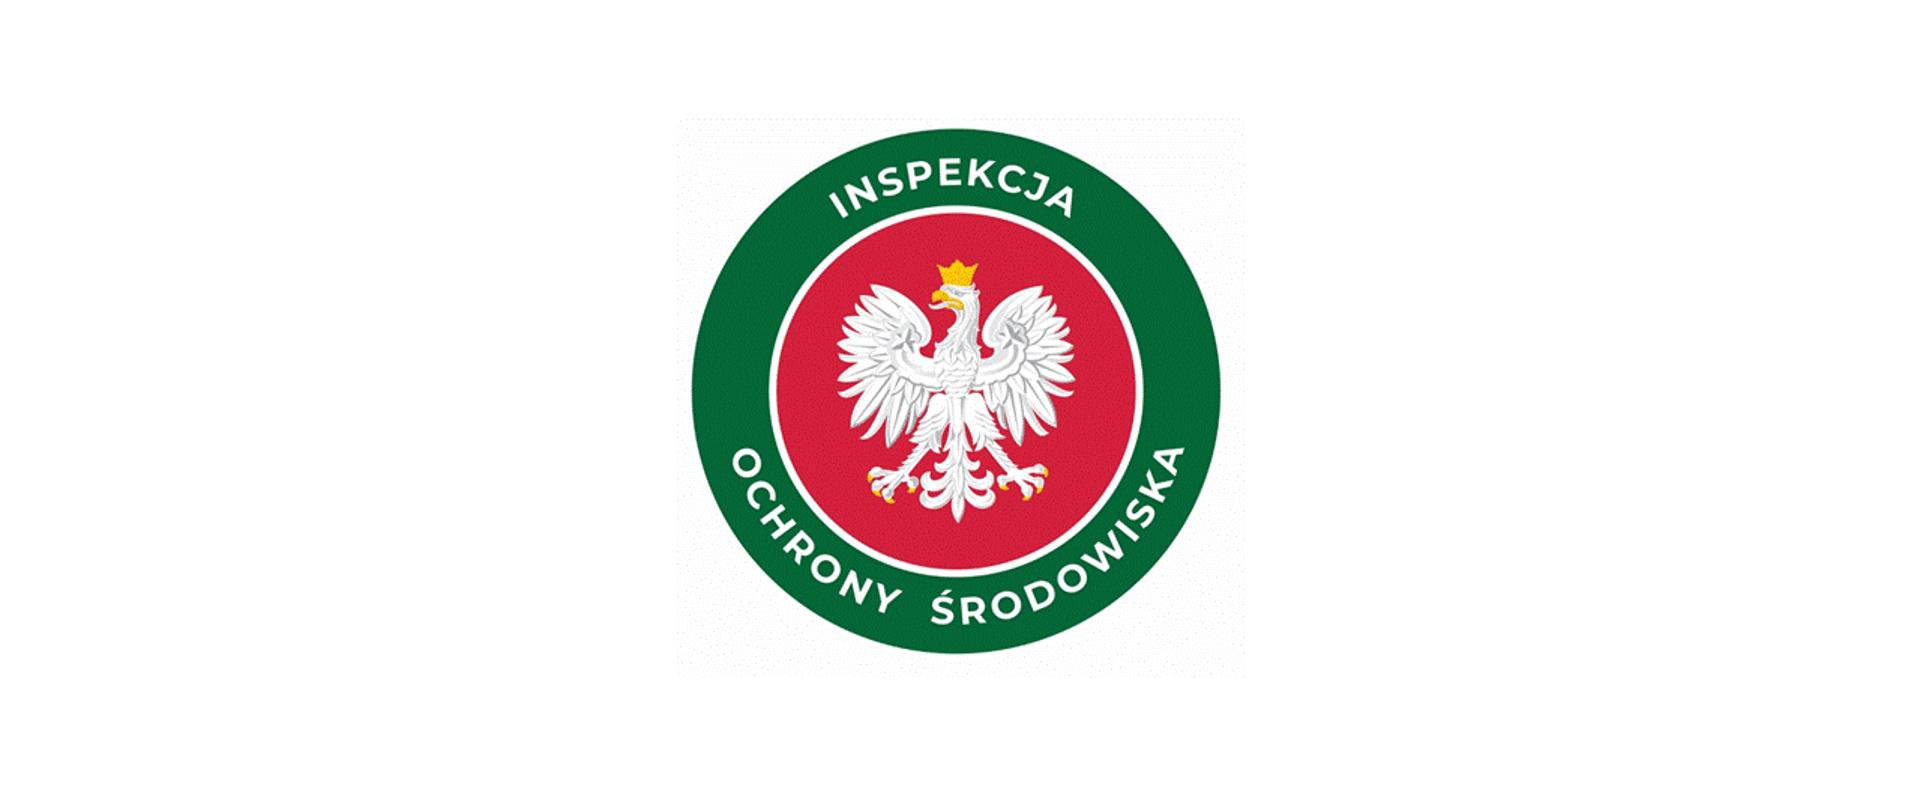 Okrągłe logo Inspekcji Ochrony Środowiska: w środku godło Polski - orzeł w koronie na czerwonym tle - otoczony zielonym okręgiem z napisem "Inspekcja Ochrony Środowiska"